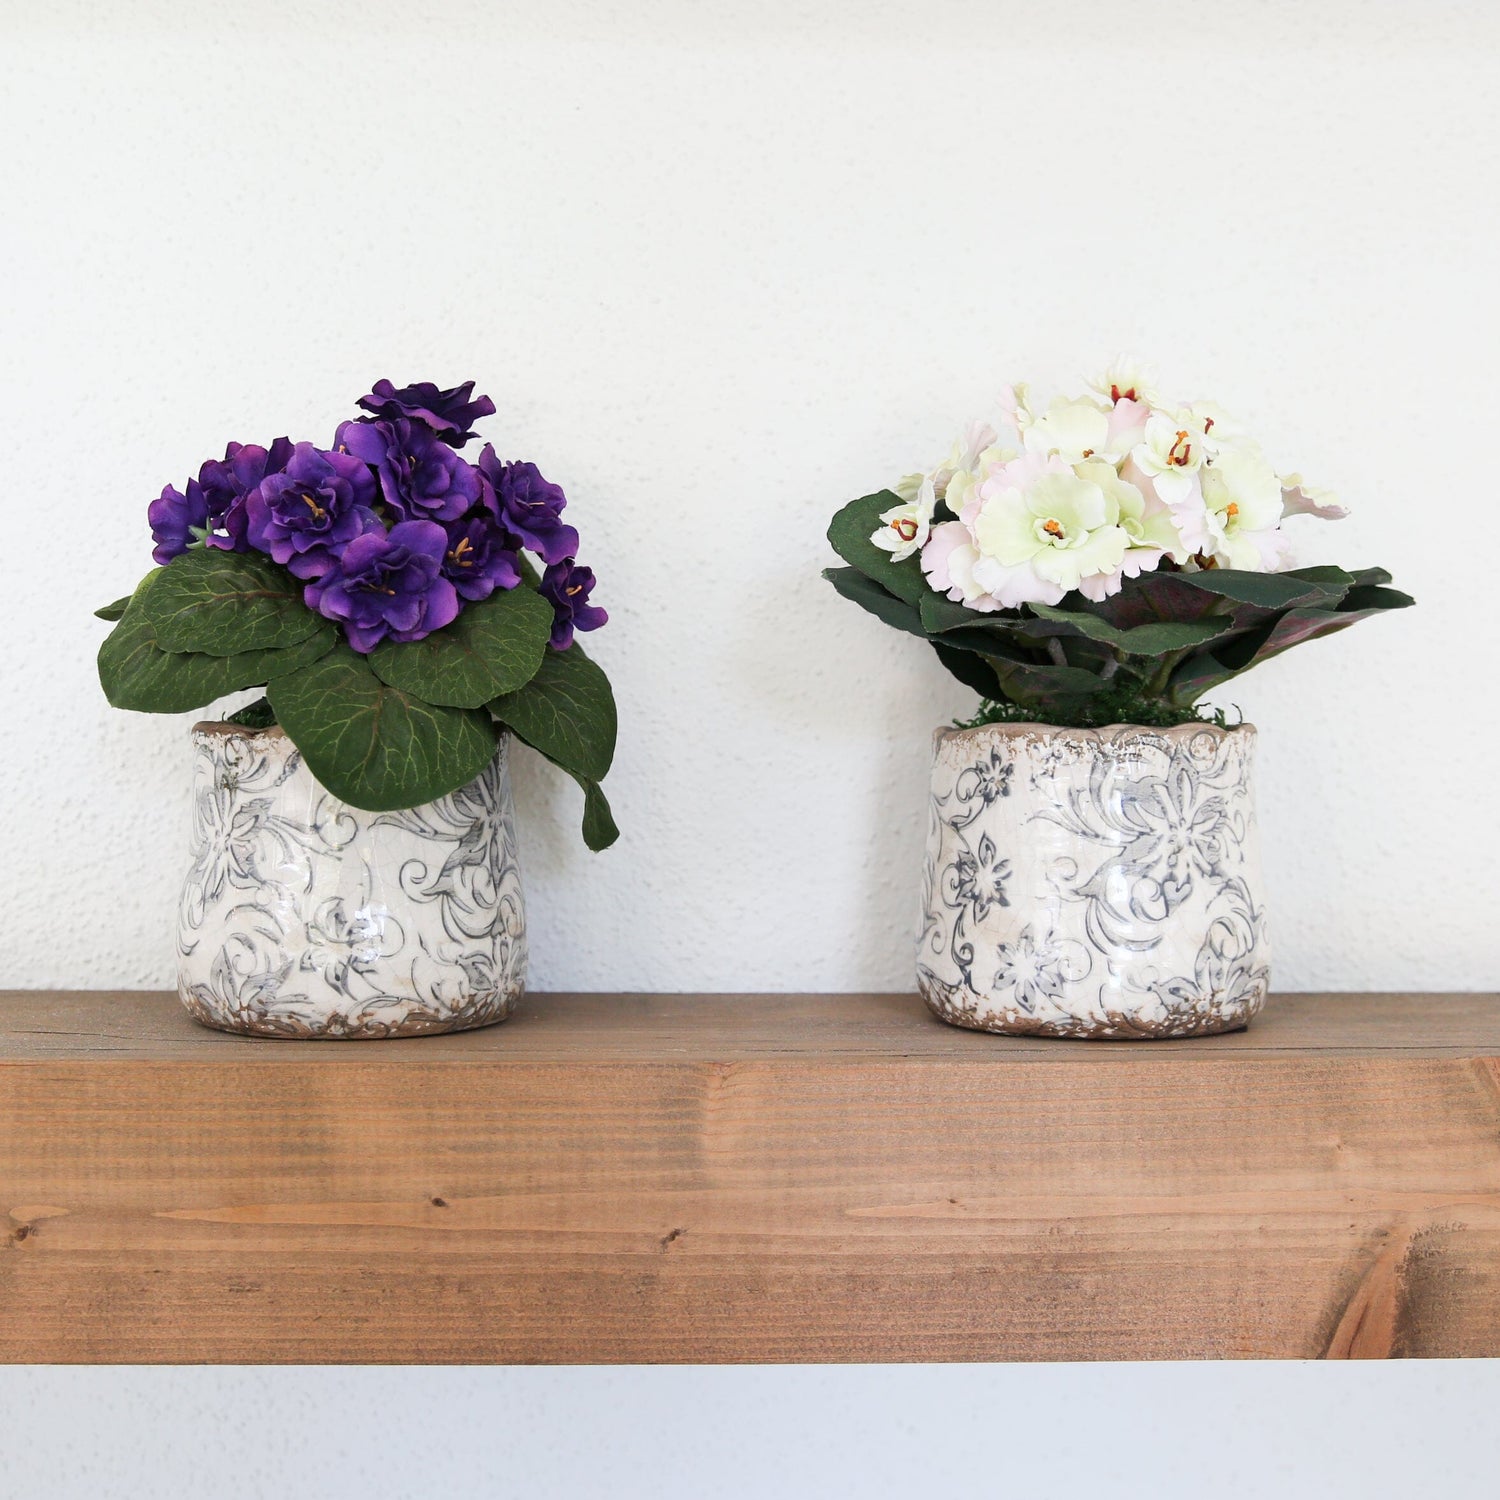 8” African Violet Artificial Plant in Floral Design Vase (Set of 2)